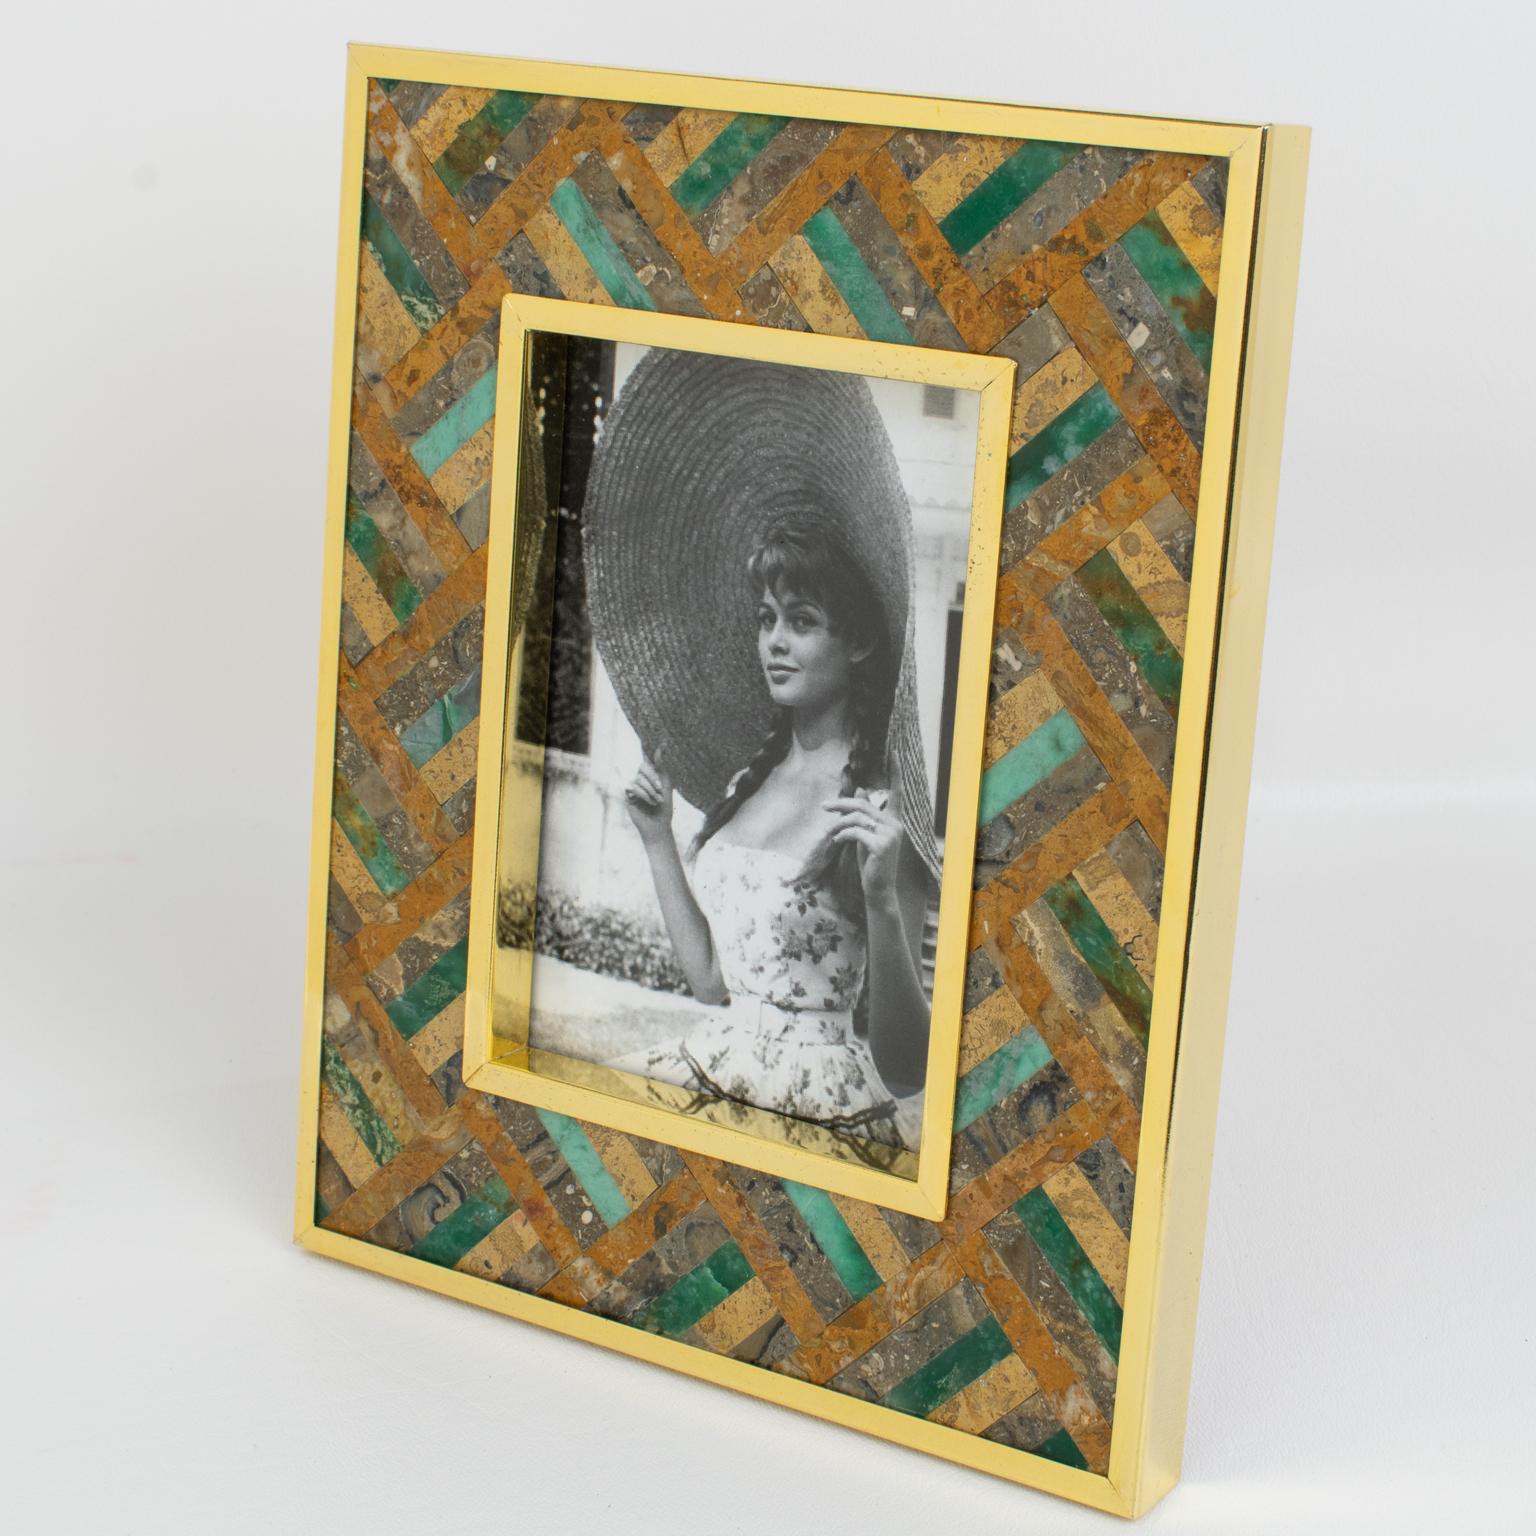 Charmant cadre photo en laiton doré et pierre, conçu par la designer italienne Rita Frascione, Firenze, dans les années 1980. 
Le cadre photo présente un encadrement en métal doré avec incrustation de marqueterie de pierre. Les pierres dures